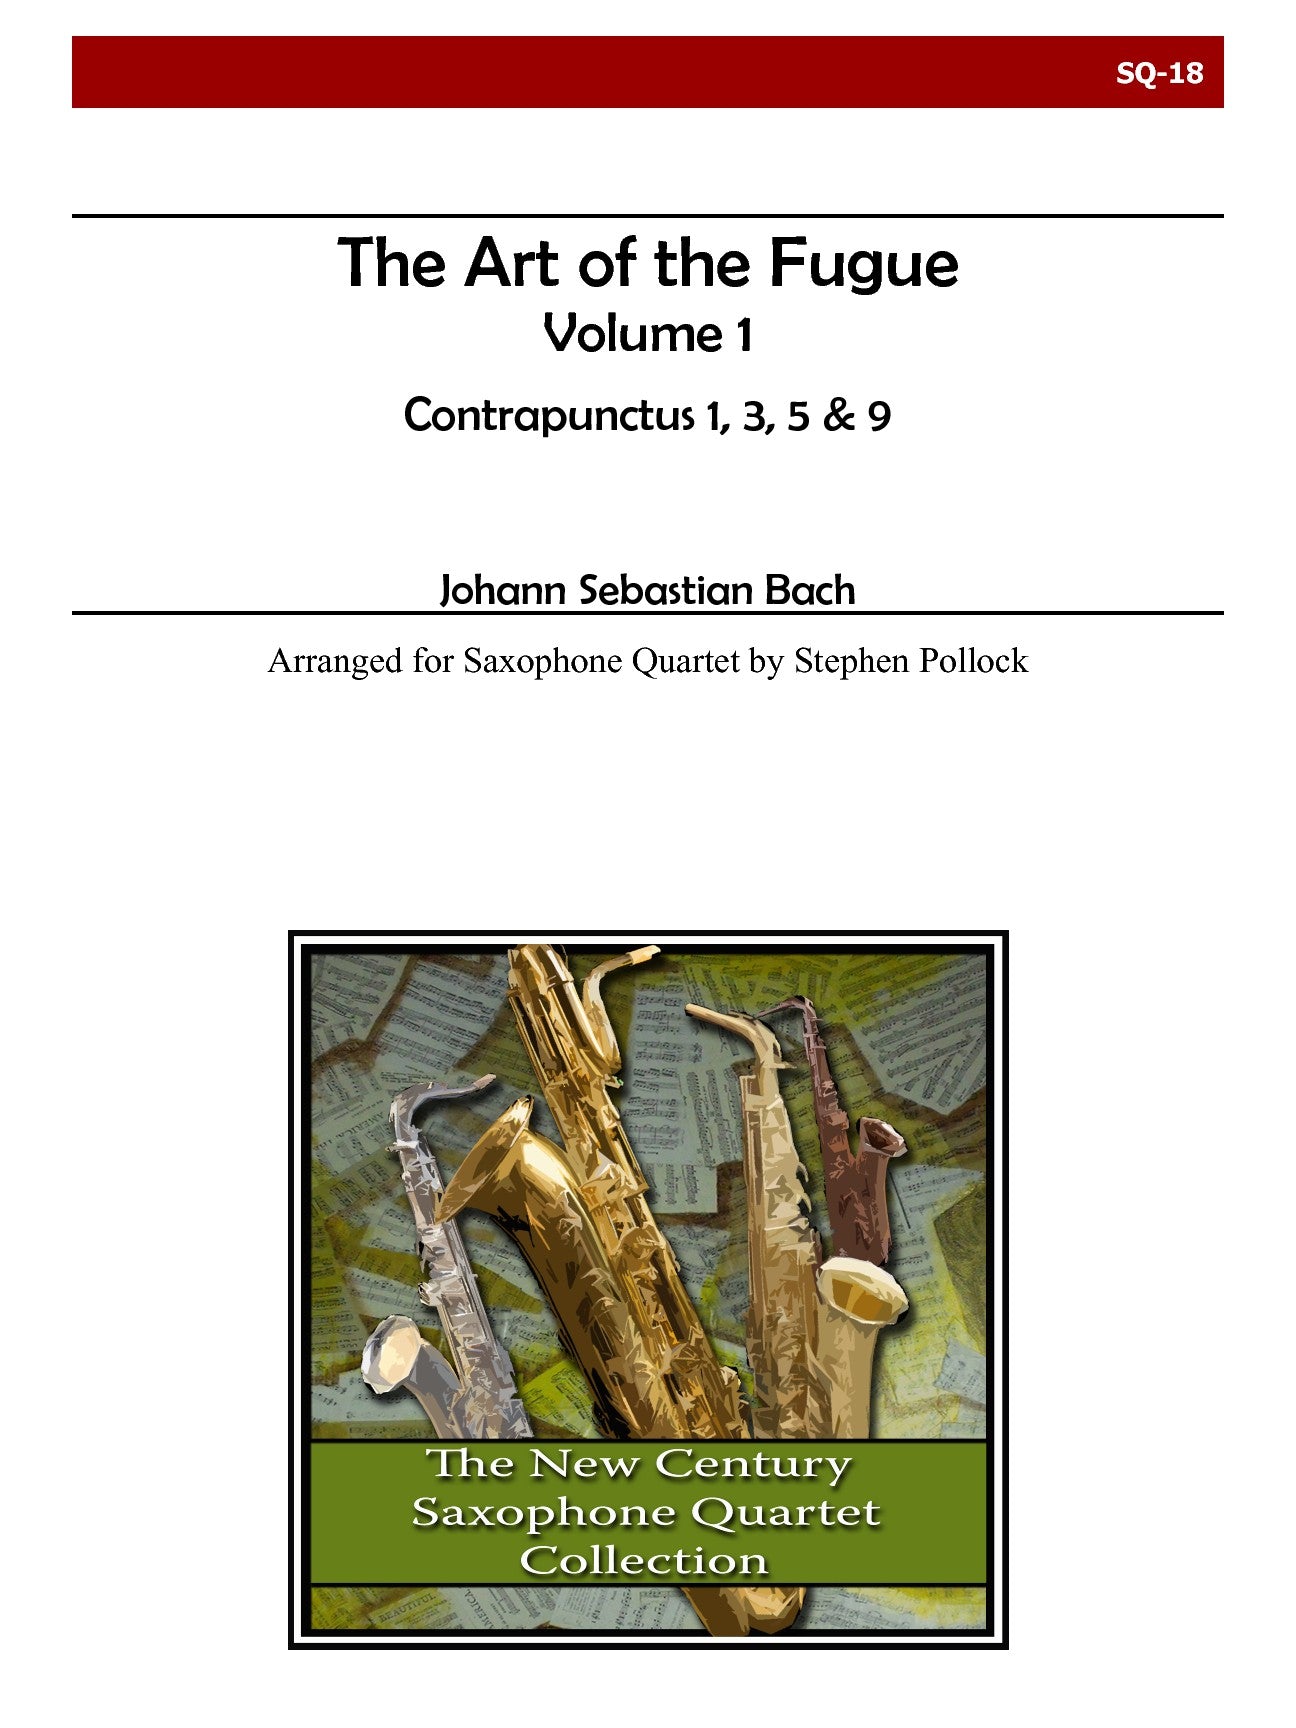 Bach: The Art of the Fugue - Volume 1 (arr. for sax quartet)